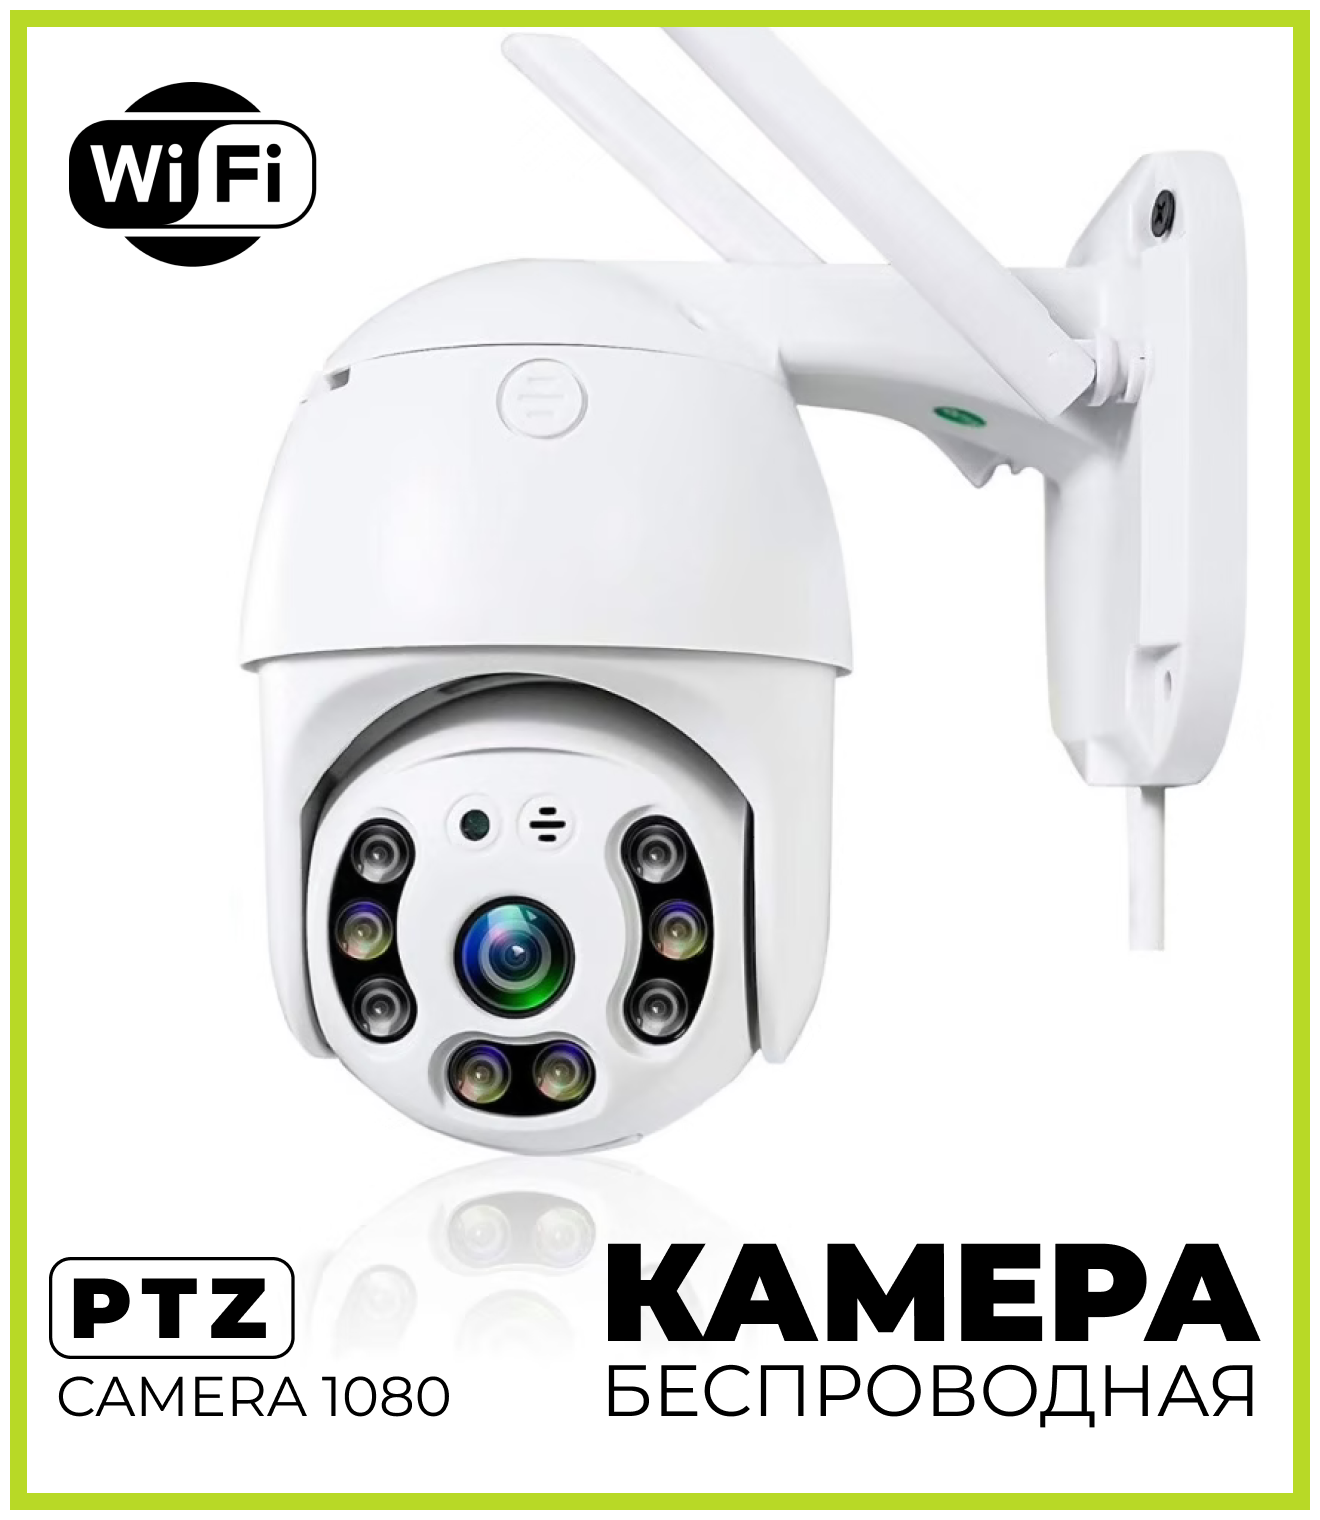 Adamar / Уличная беспроводная ip камера видеонаблюдения WiFi smart camera 1080P / Скрытая камера / Мини камера